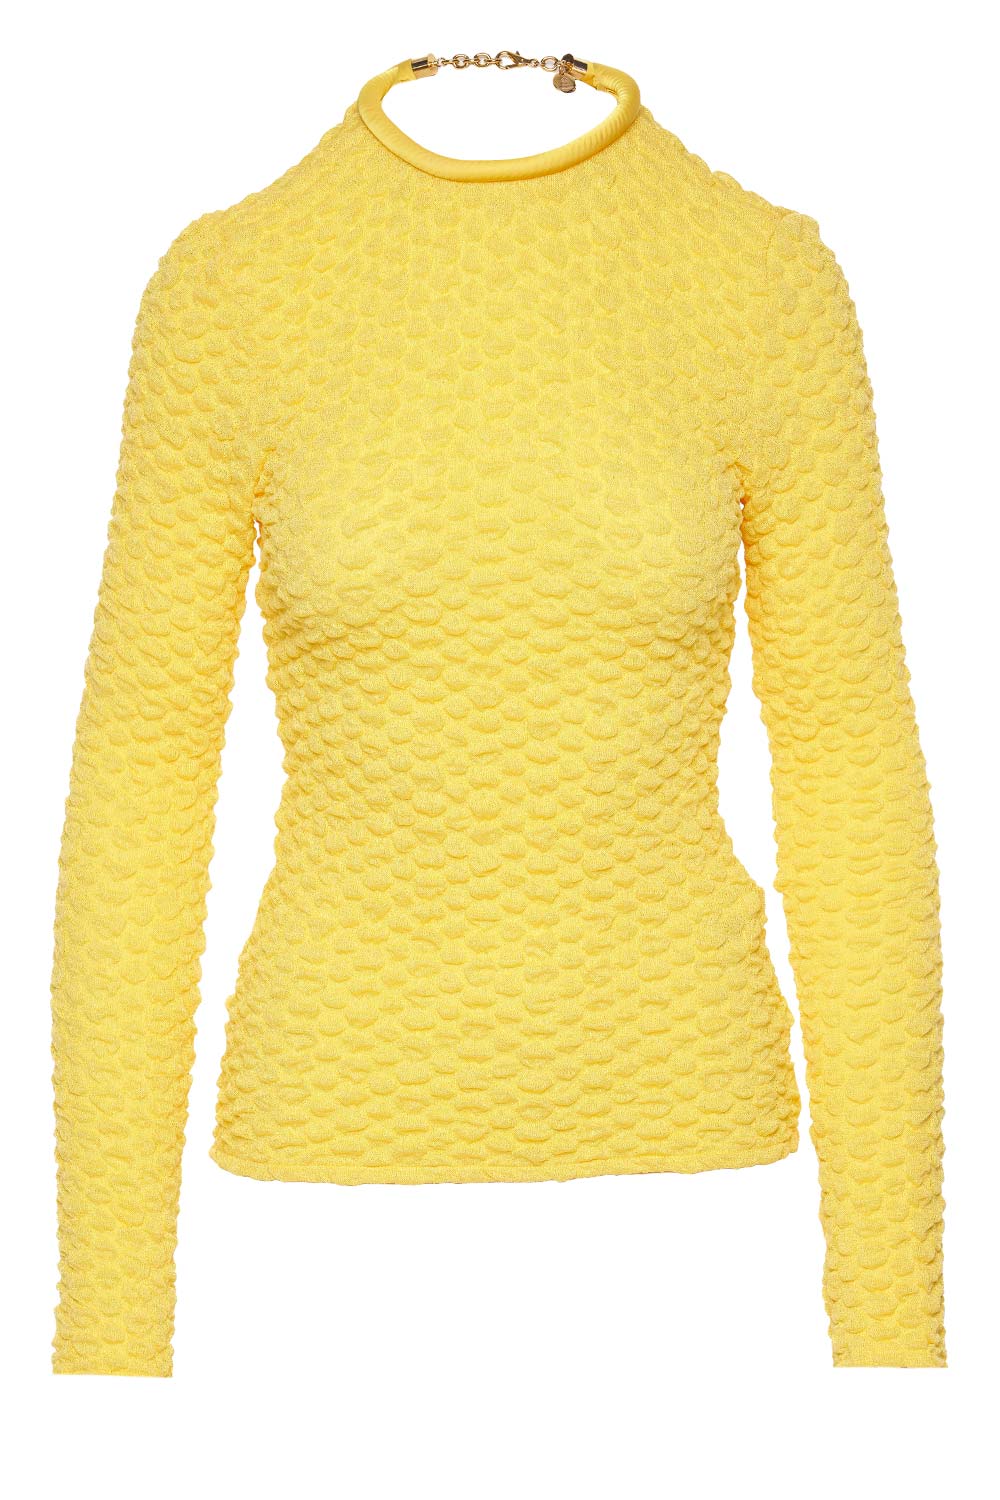 Silvia Tcherassi Jari Yellow Textured Long Sleeve Top